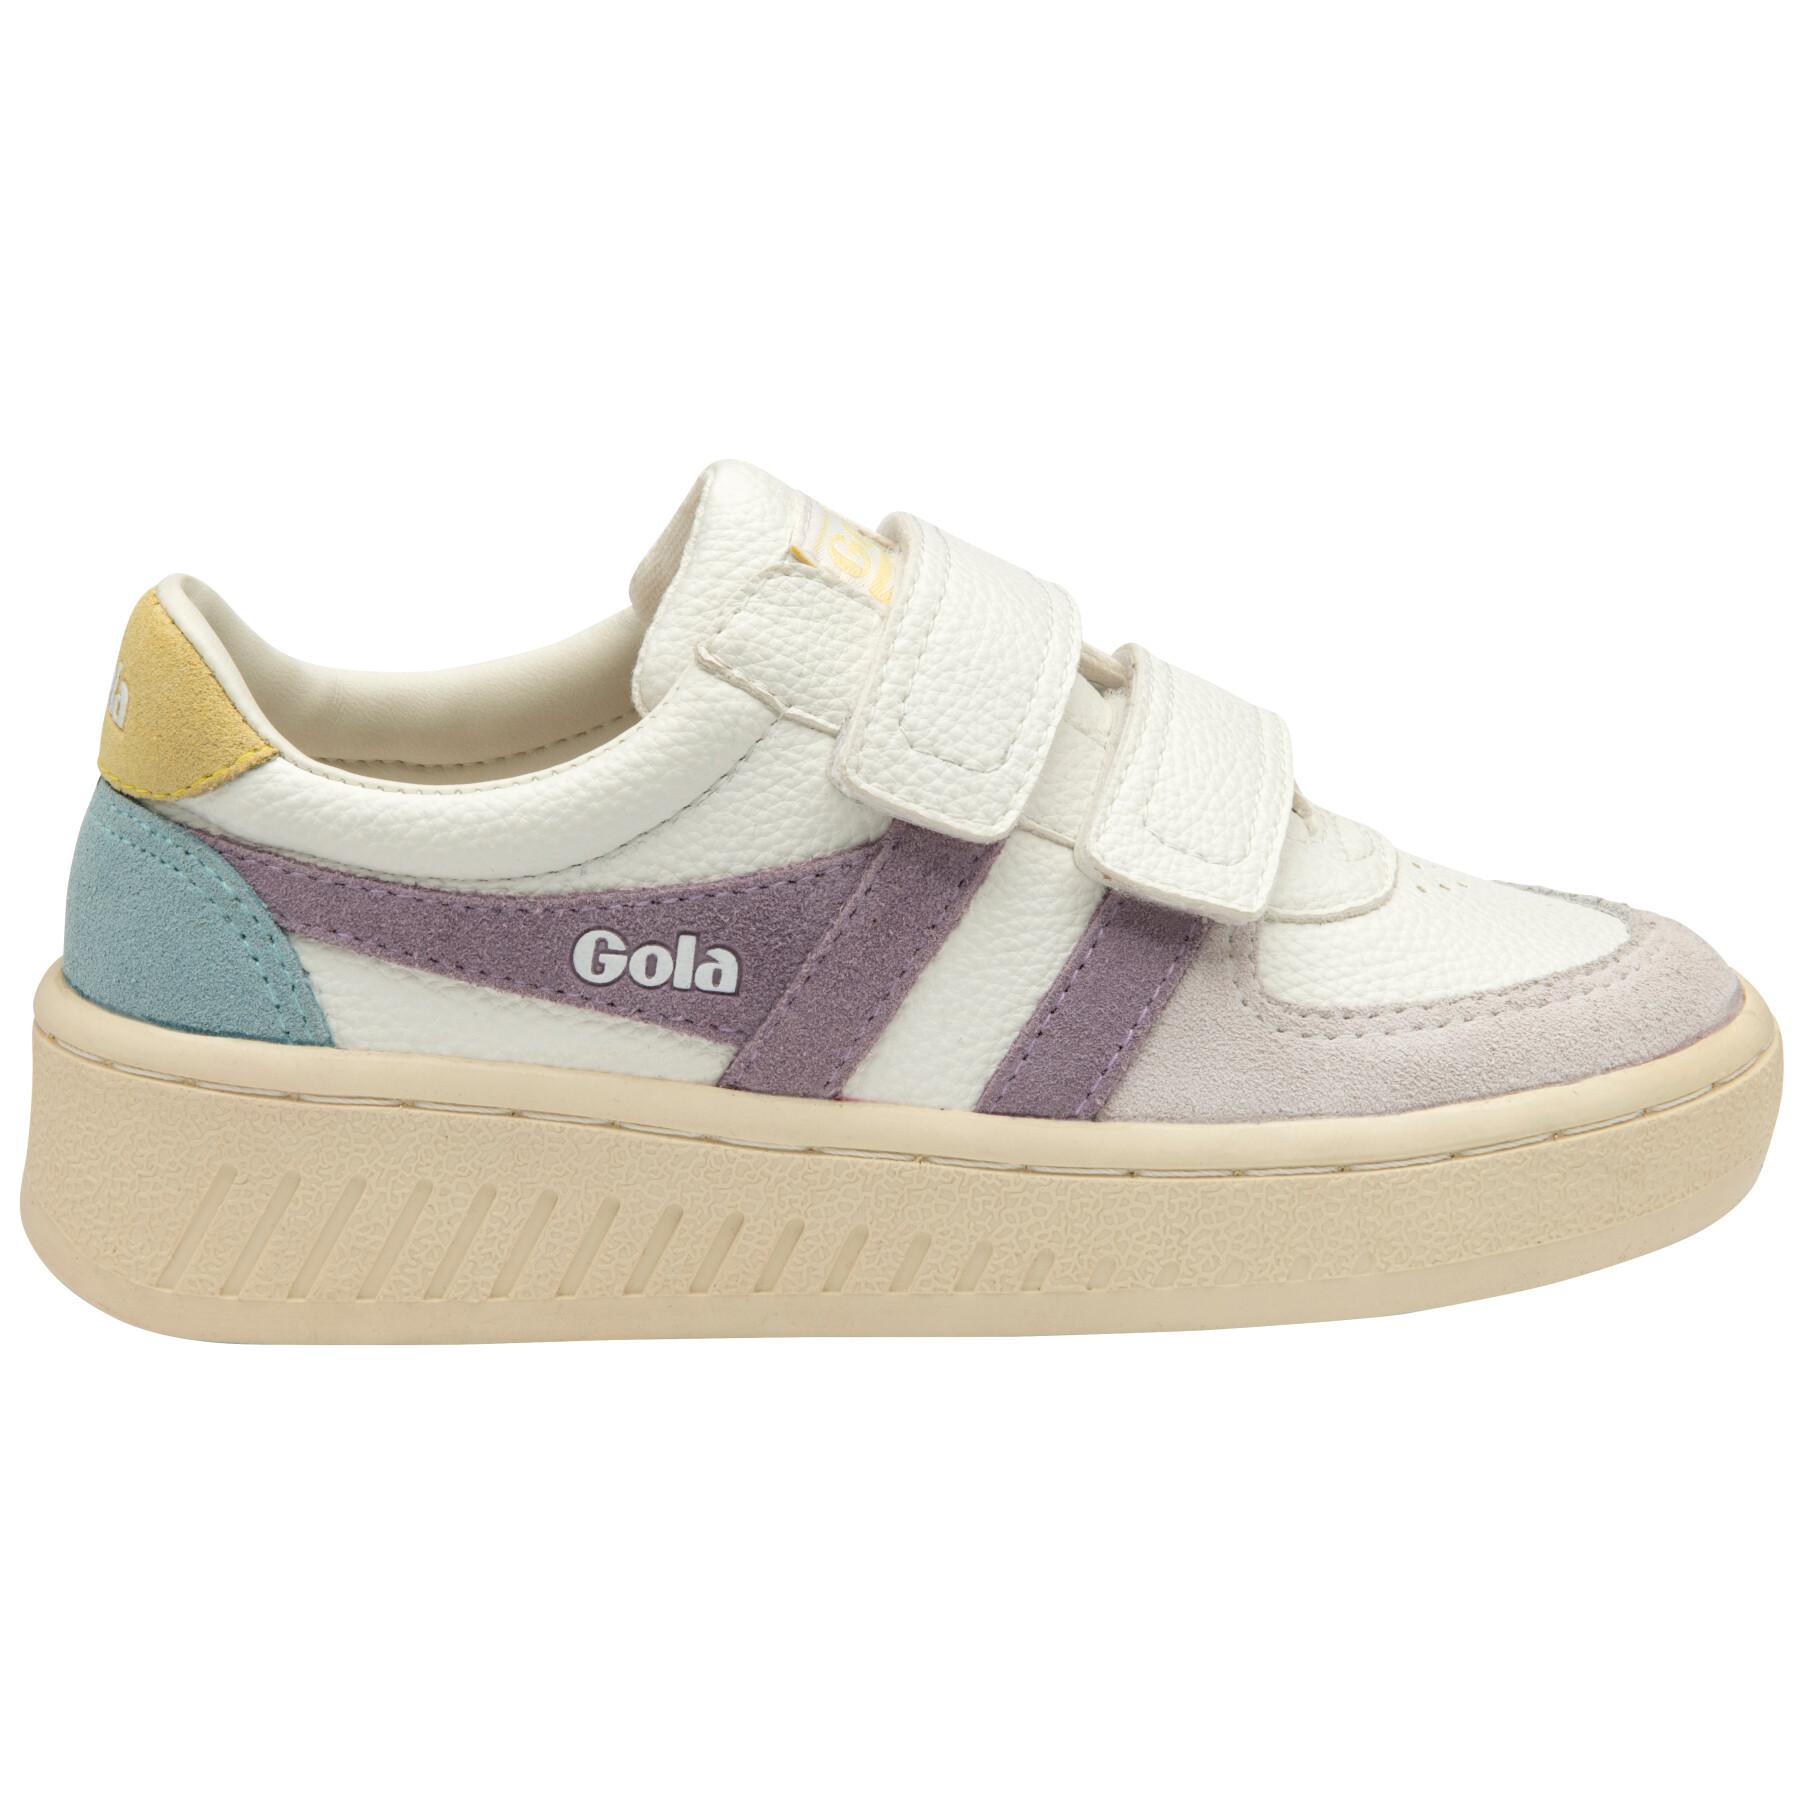 Girl sneakers Gola Classics Grandslam Trident